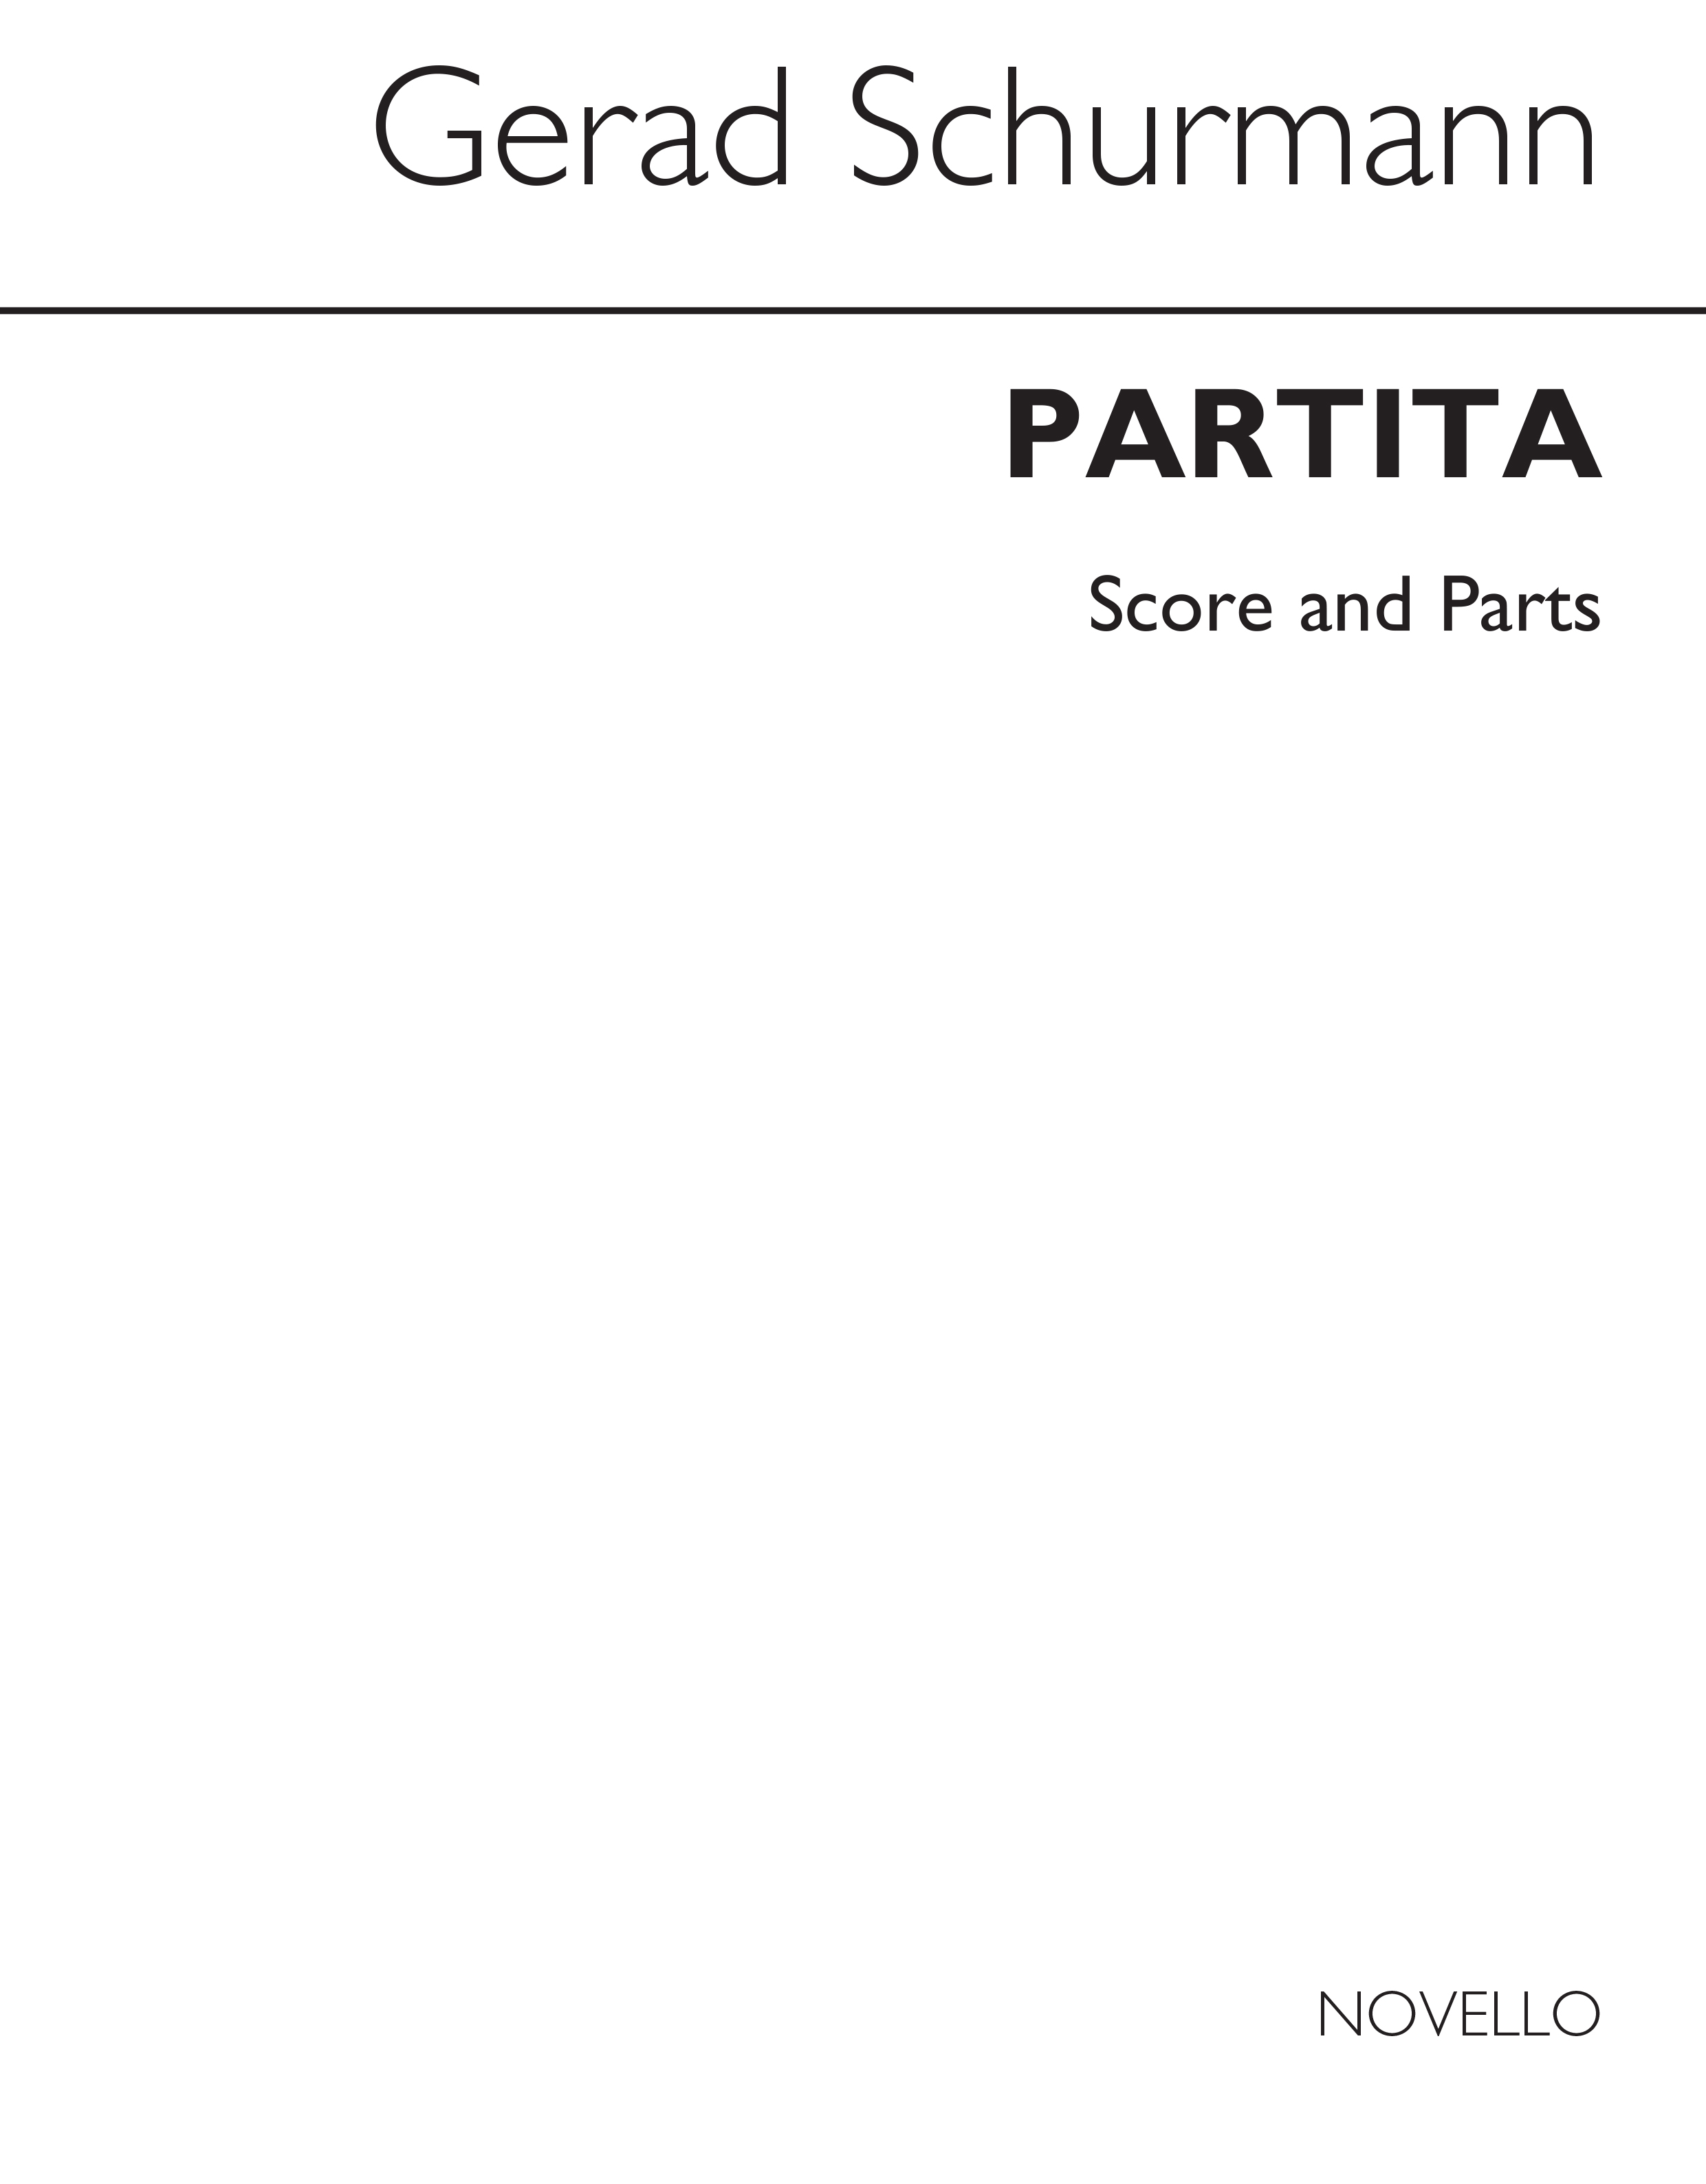 Gerard Schurmann: Partita (Score And Parts)